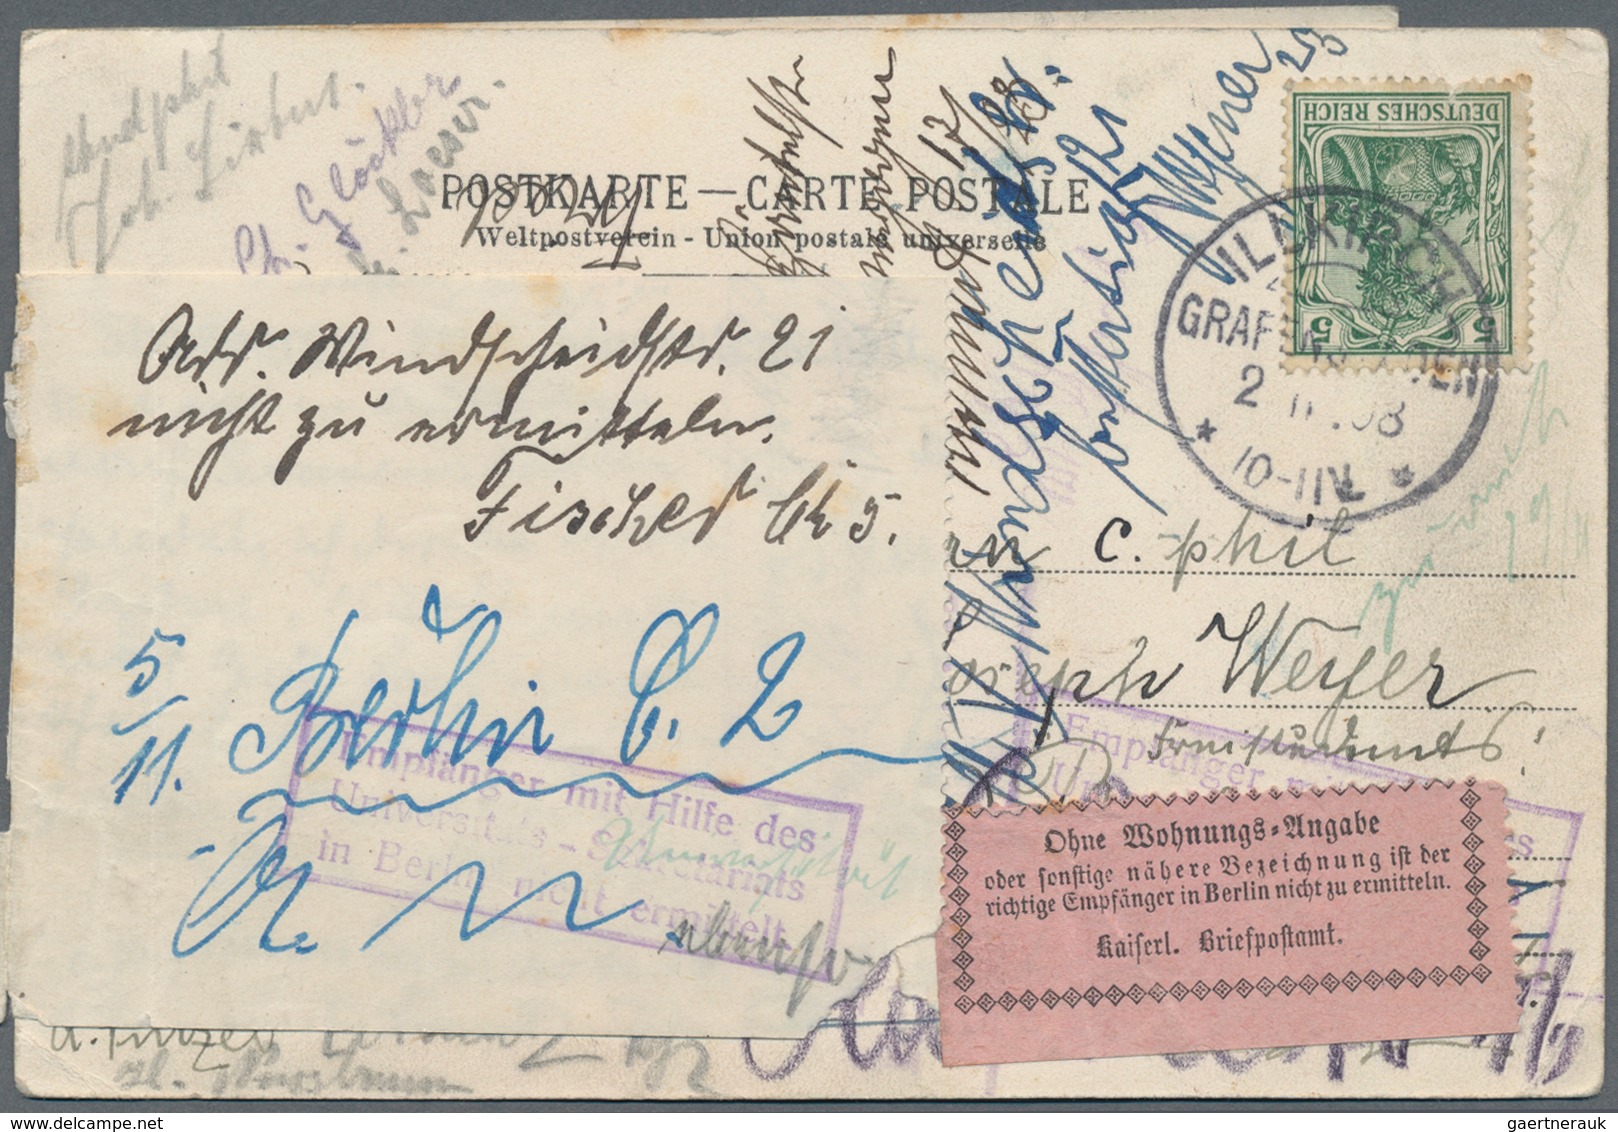 Altdeutschland und Deutsches Reich: 1855/1945 (ca.), vielseitige Partie von ca. 450 Briefen, Karten